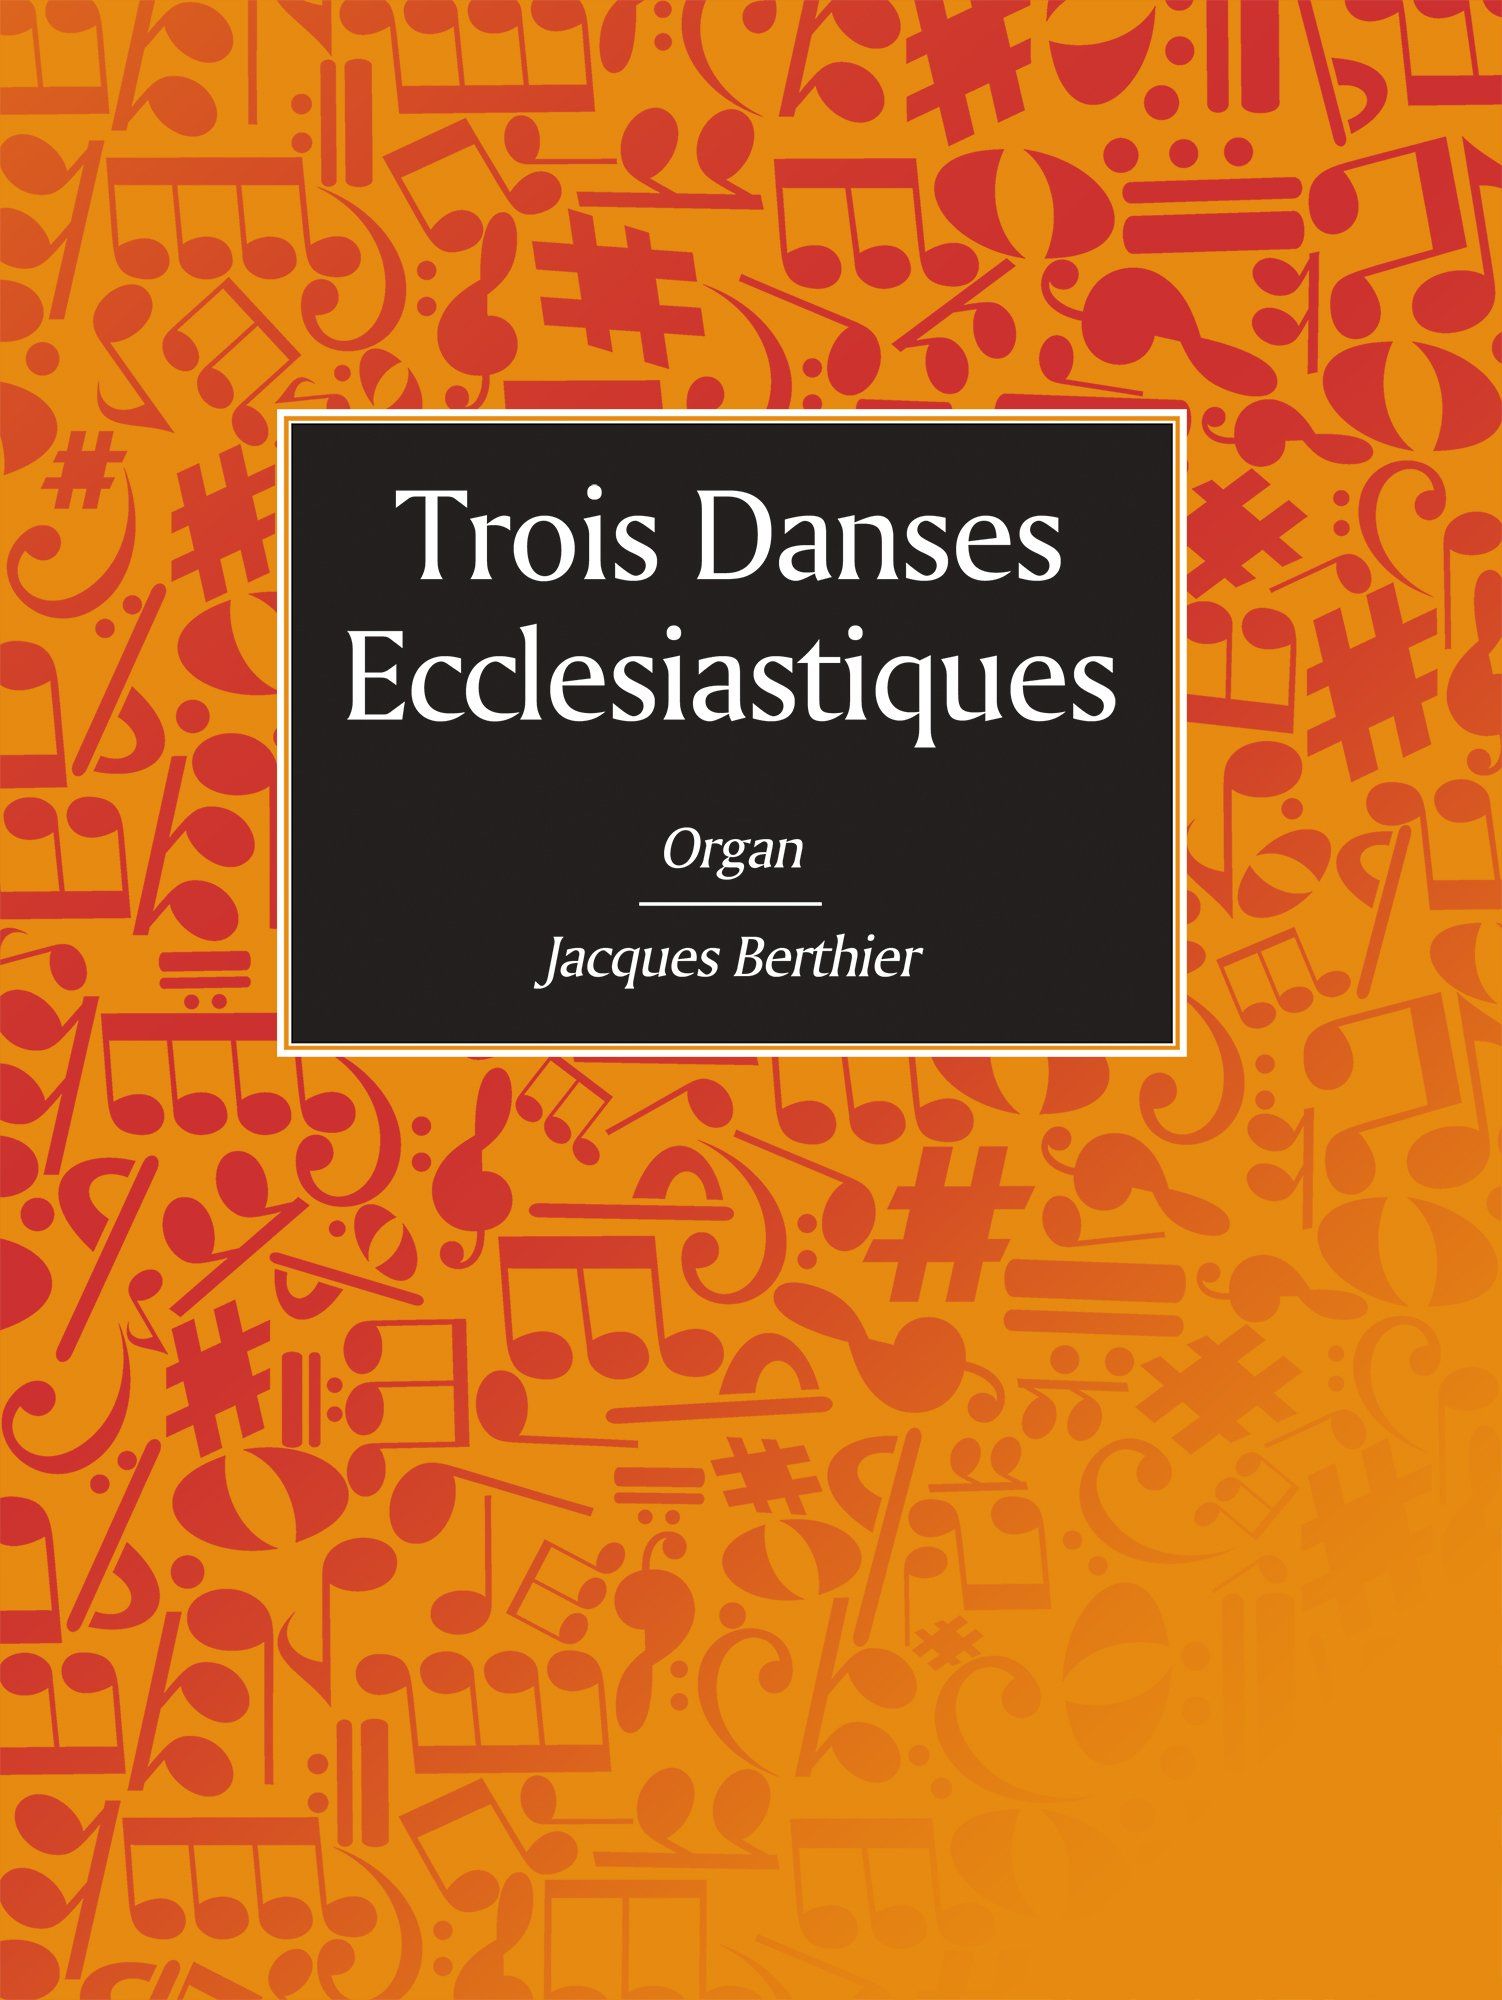 Jacques Berthier: Trois Danses Ecclesiastiques: Organ: Instrumental Album